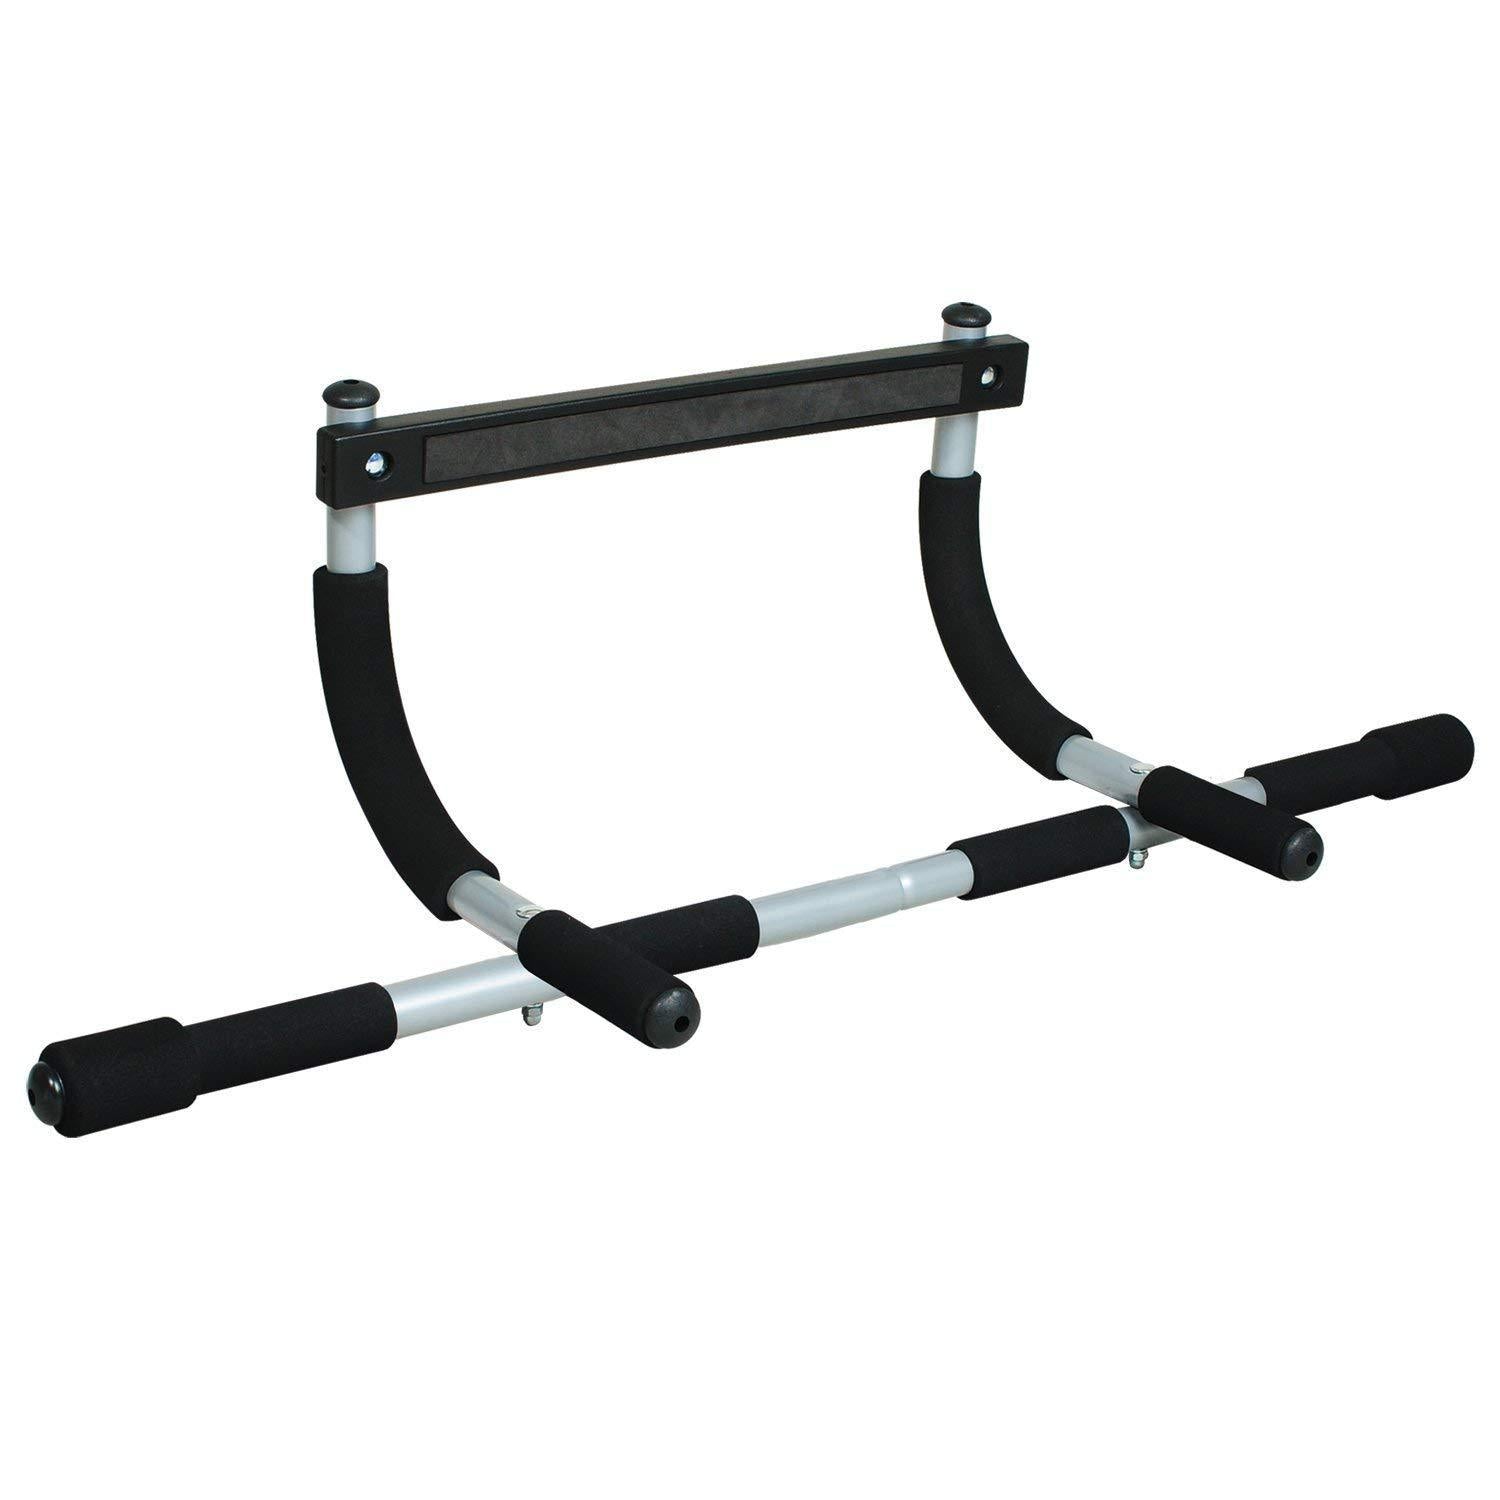 HSP Heavy Duty Adjustable Door Way Pull Up Bar Gym Equipment for men and  women, Home Gym, Indoor Fitness Equipment